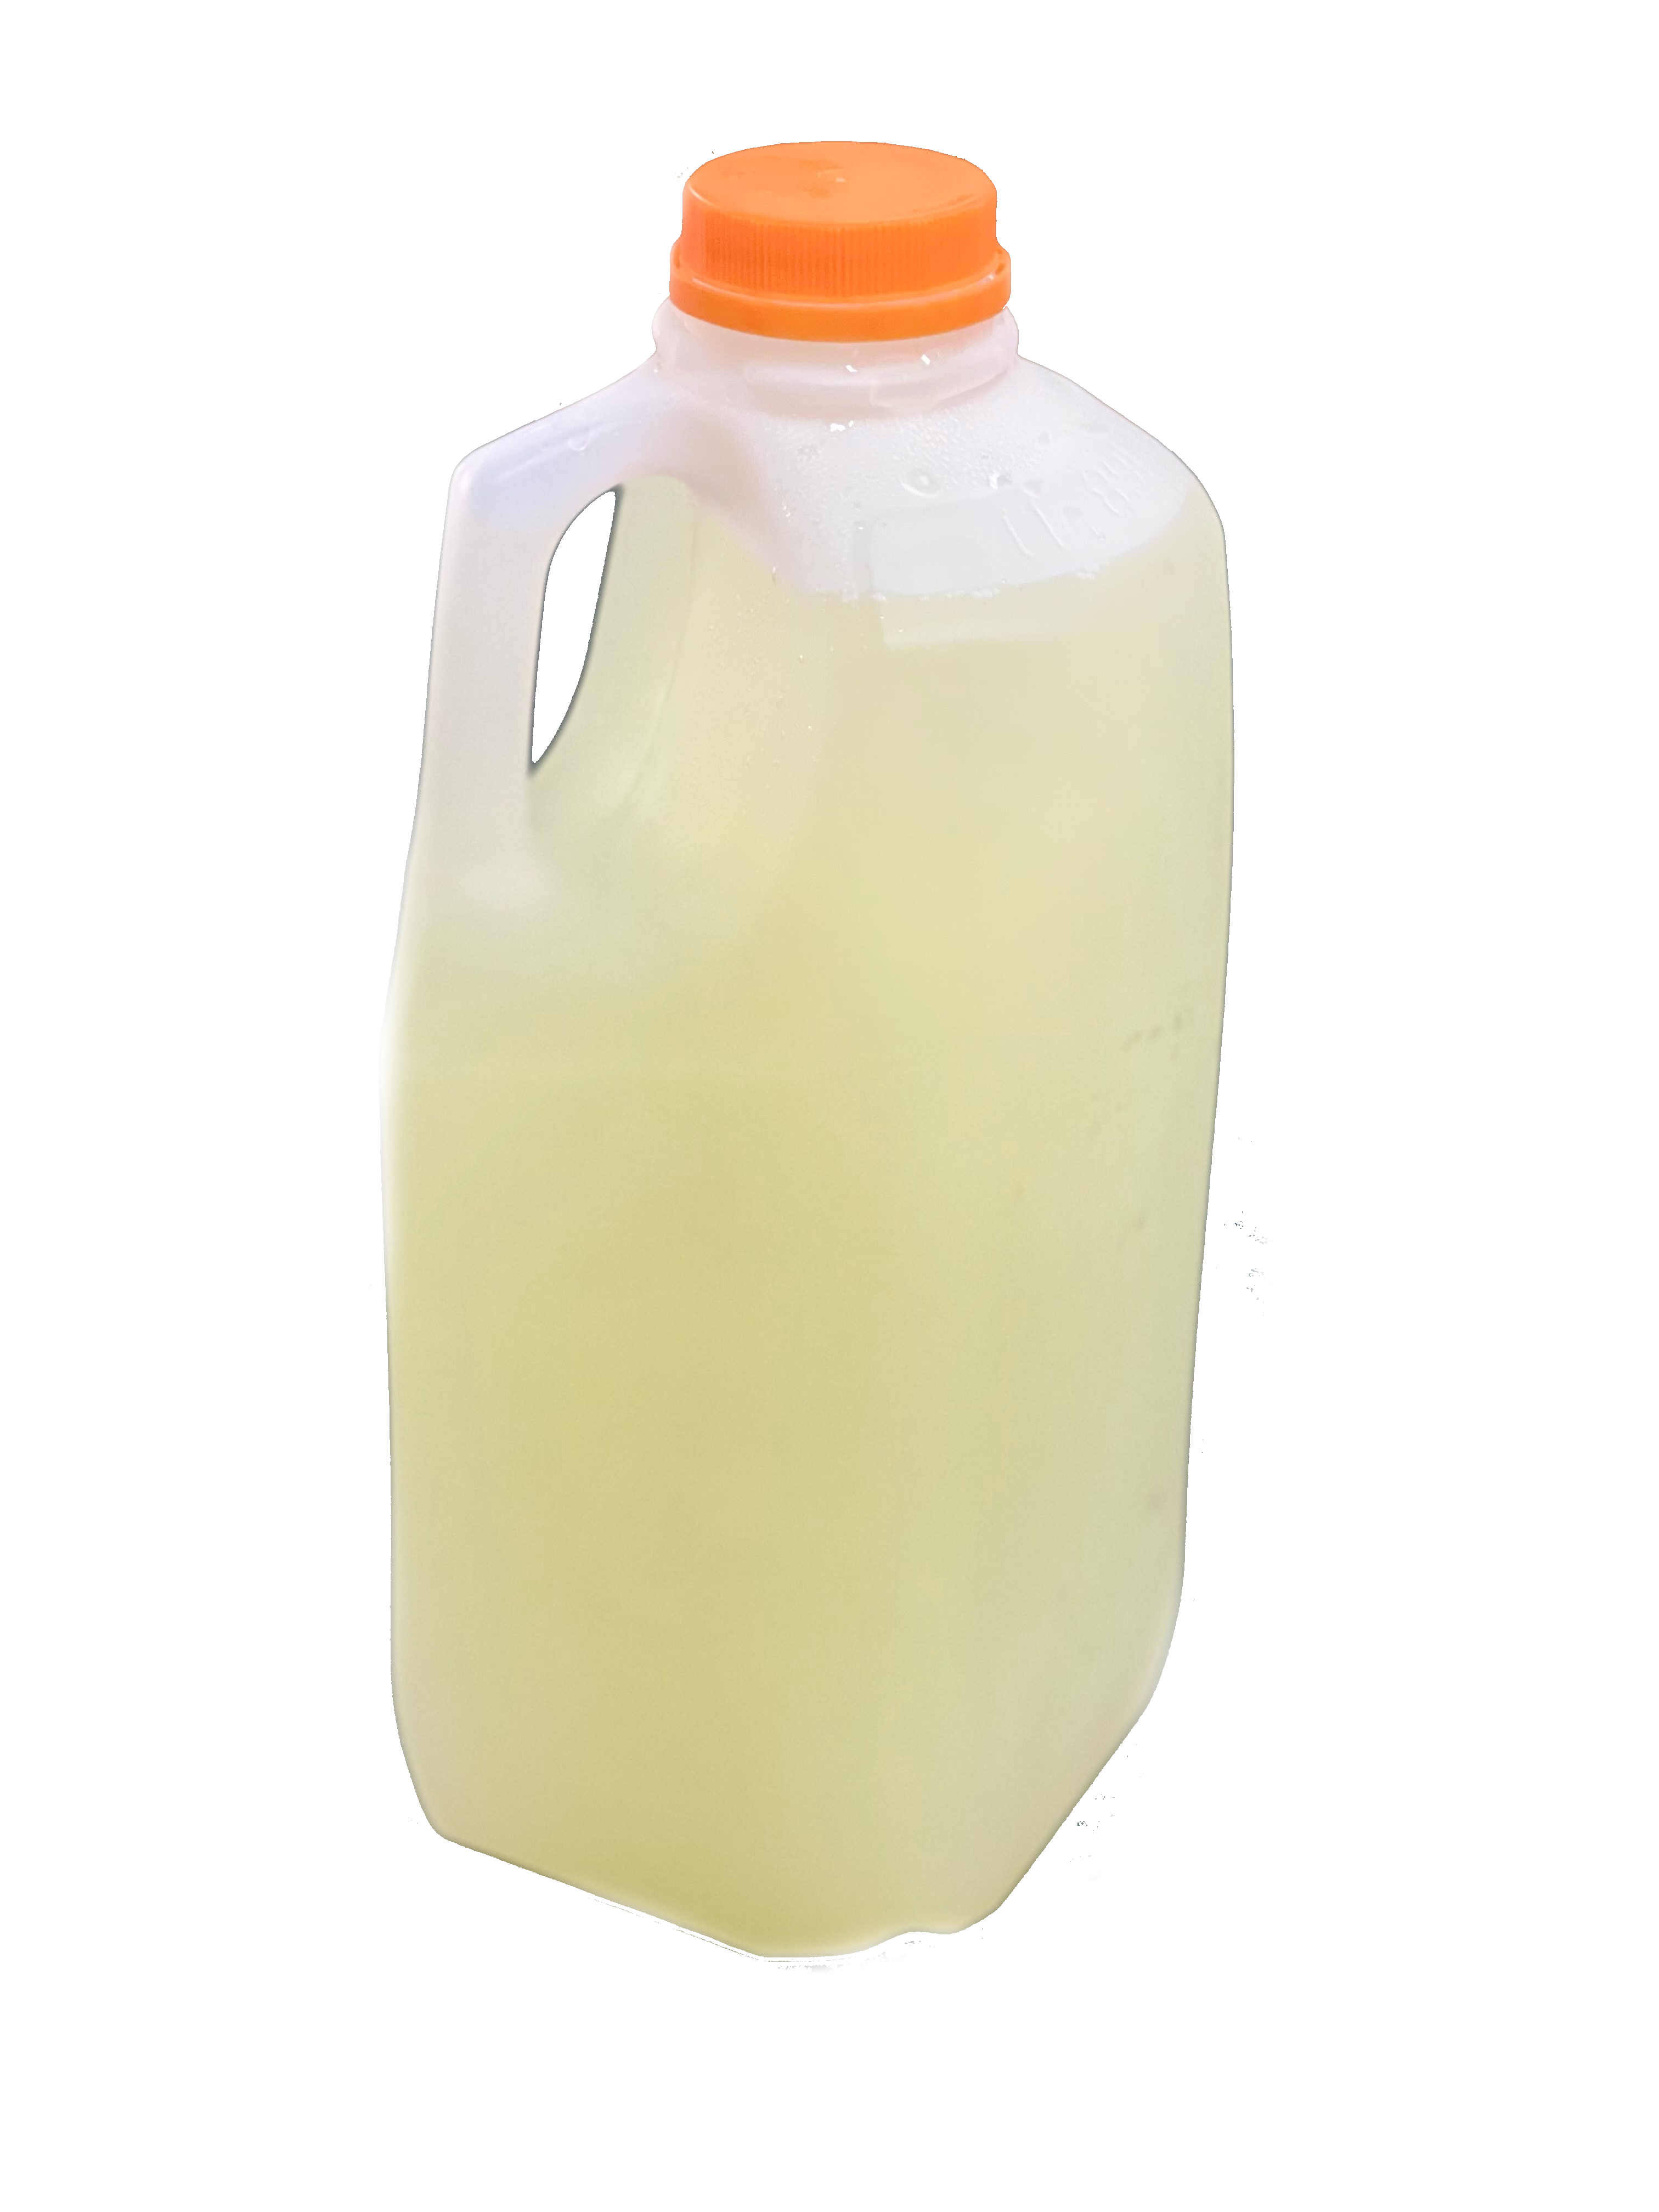 Lemonade Half Gallon